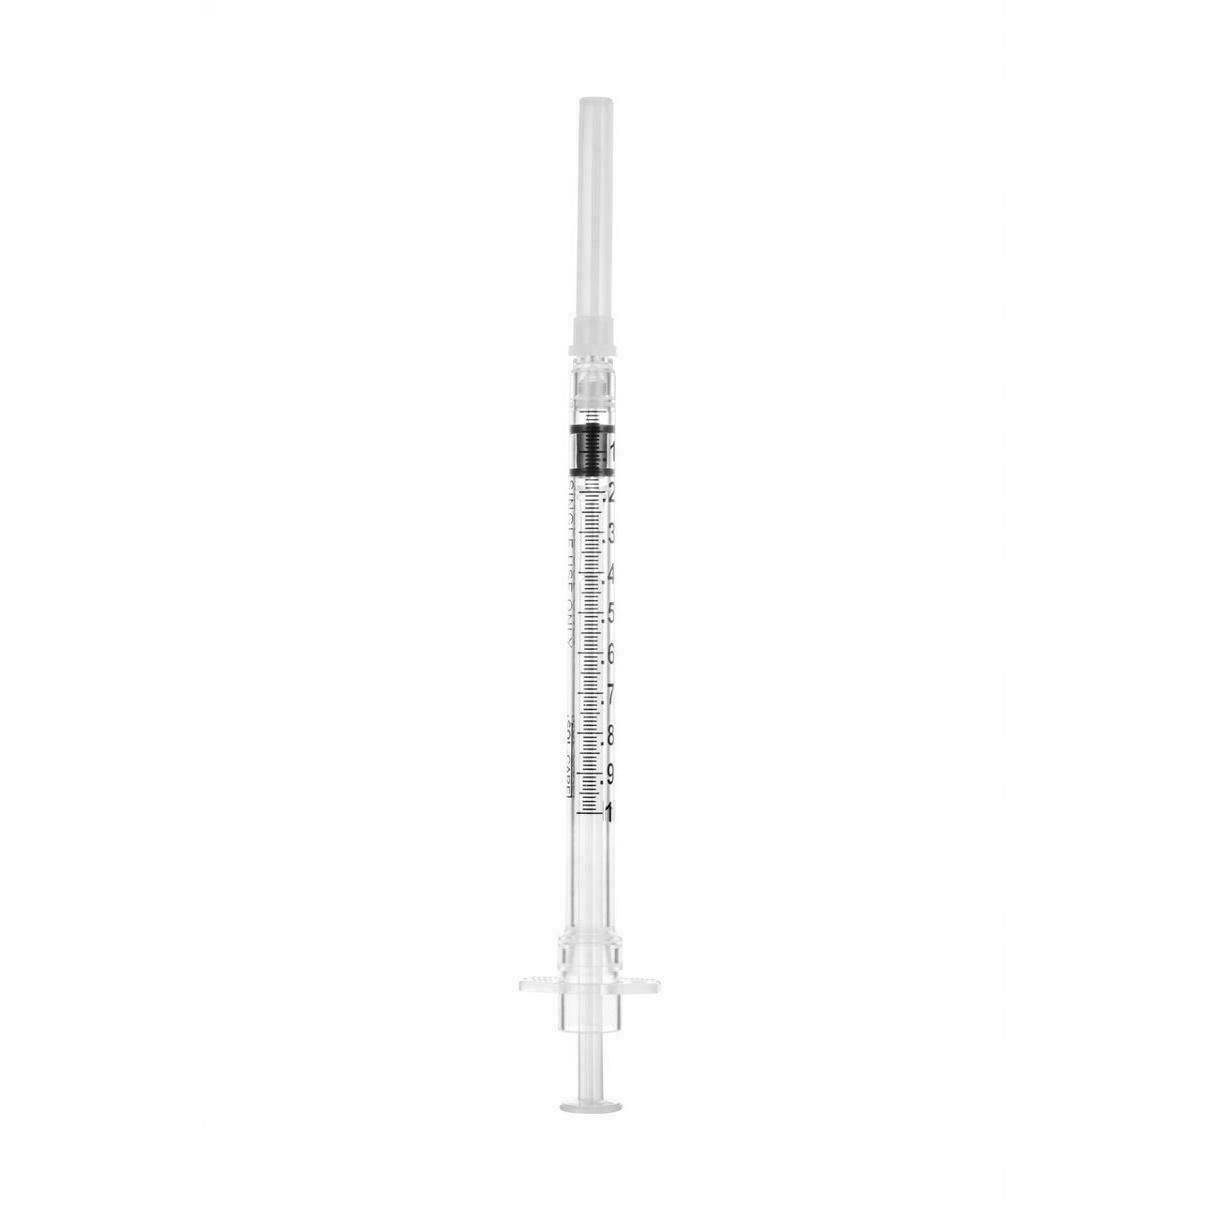 1ml 27g 1/2 inch Sol-Care Safety Syringe with Fixed Needle 100019IM UKMEDI.CO.UK